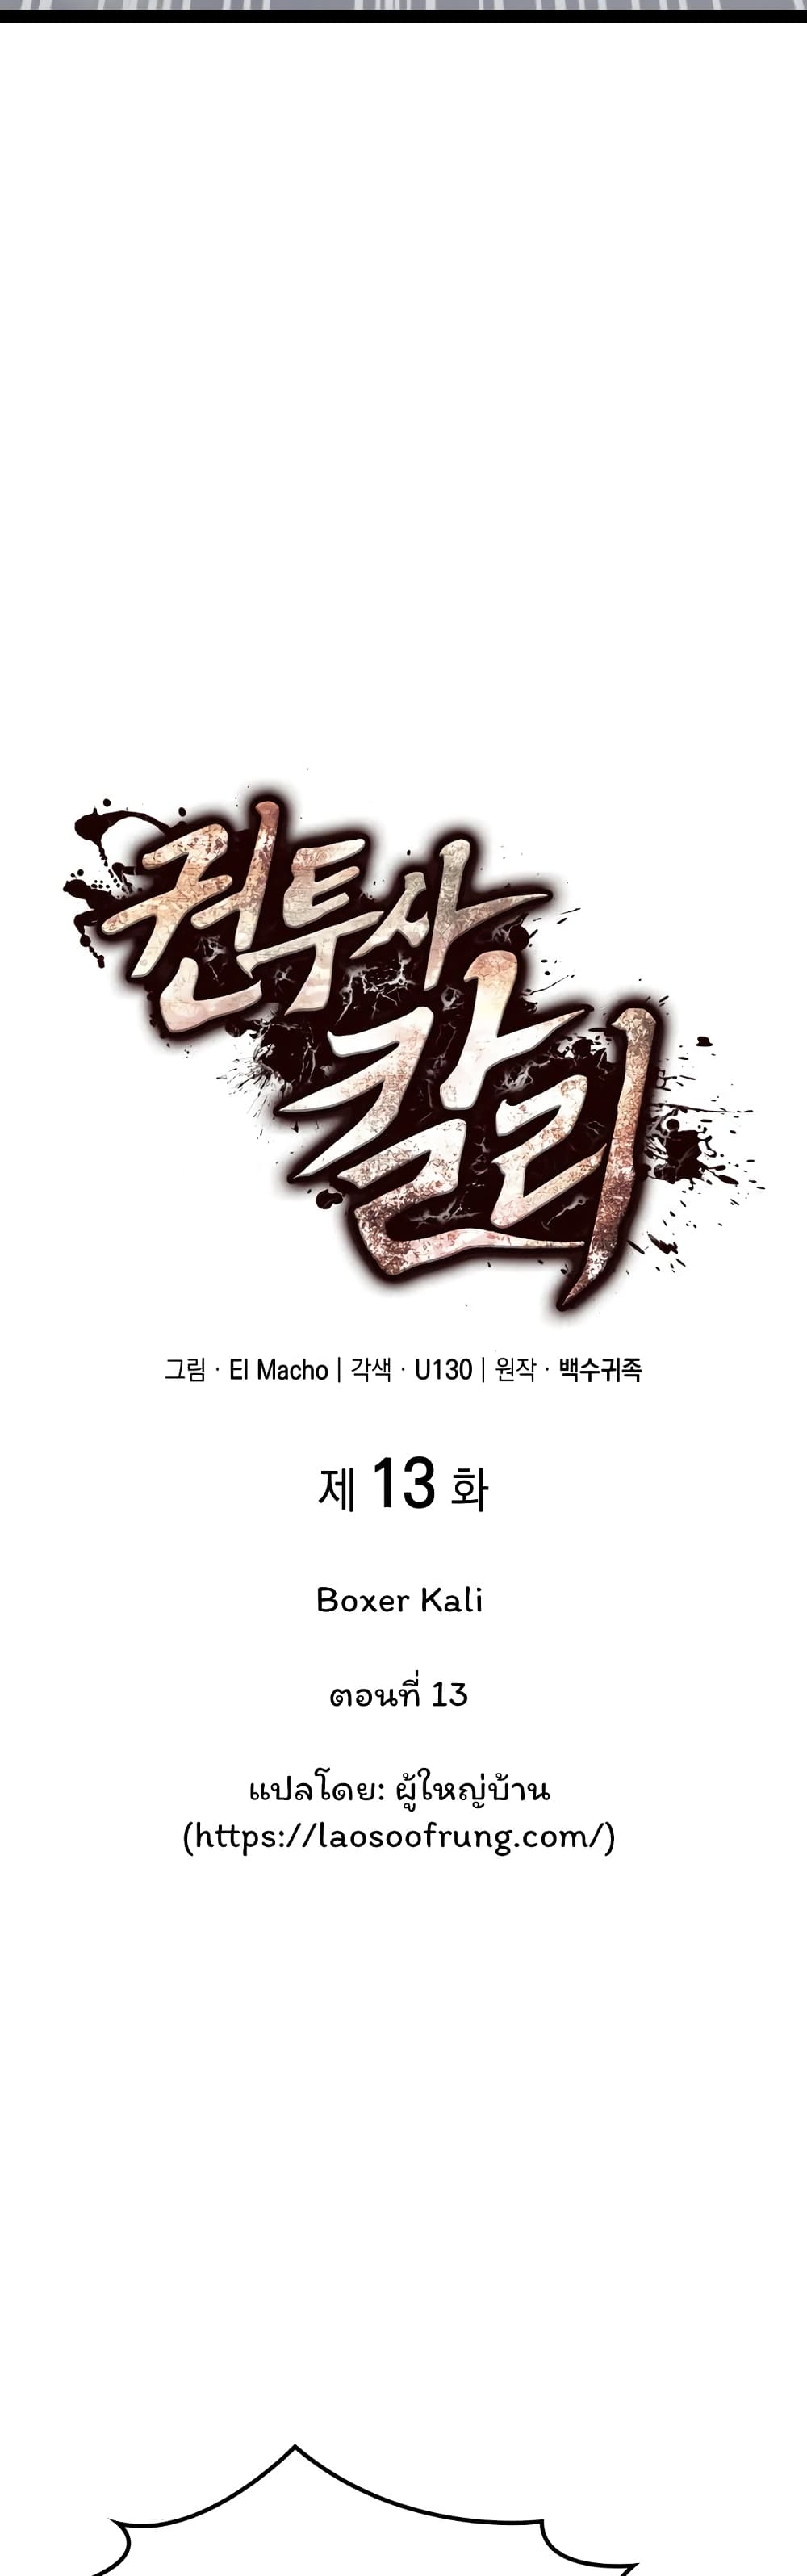 Boxer Kali 13-13